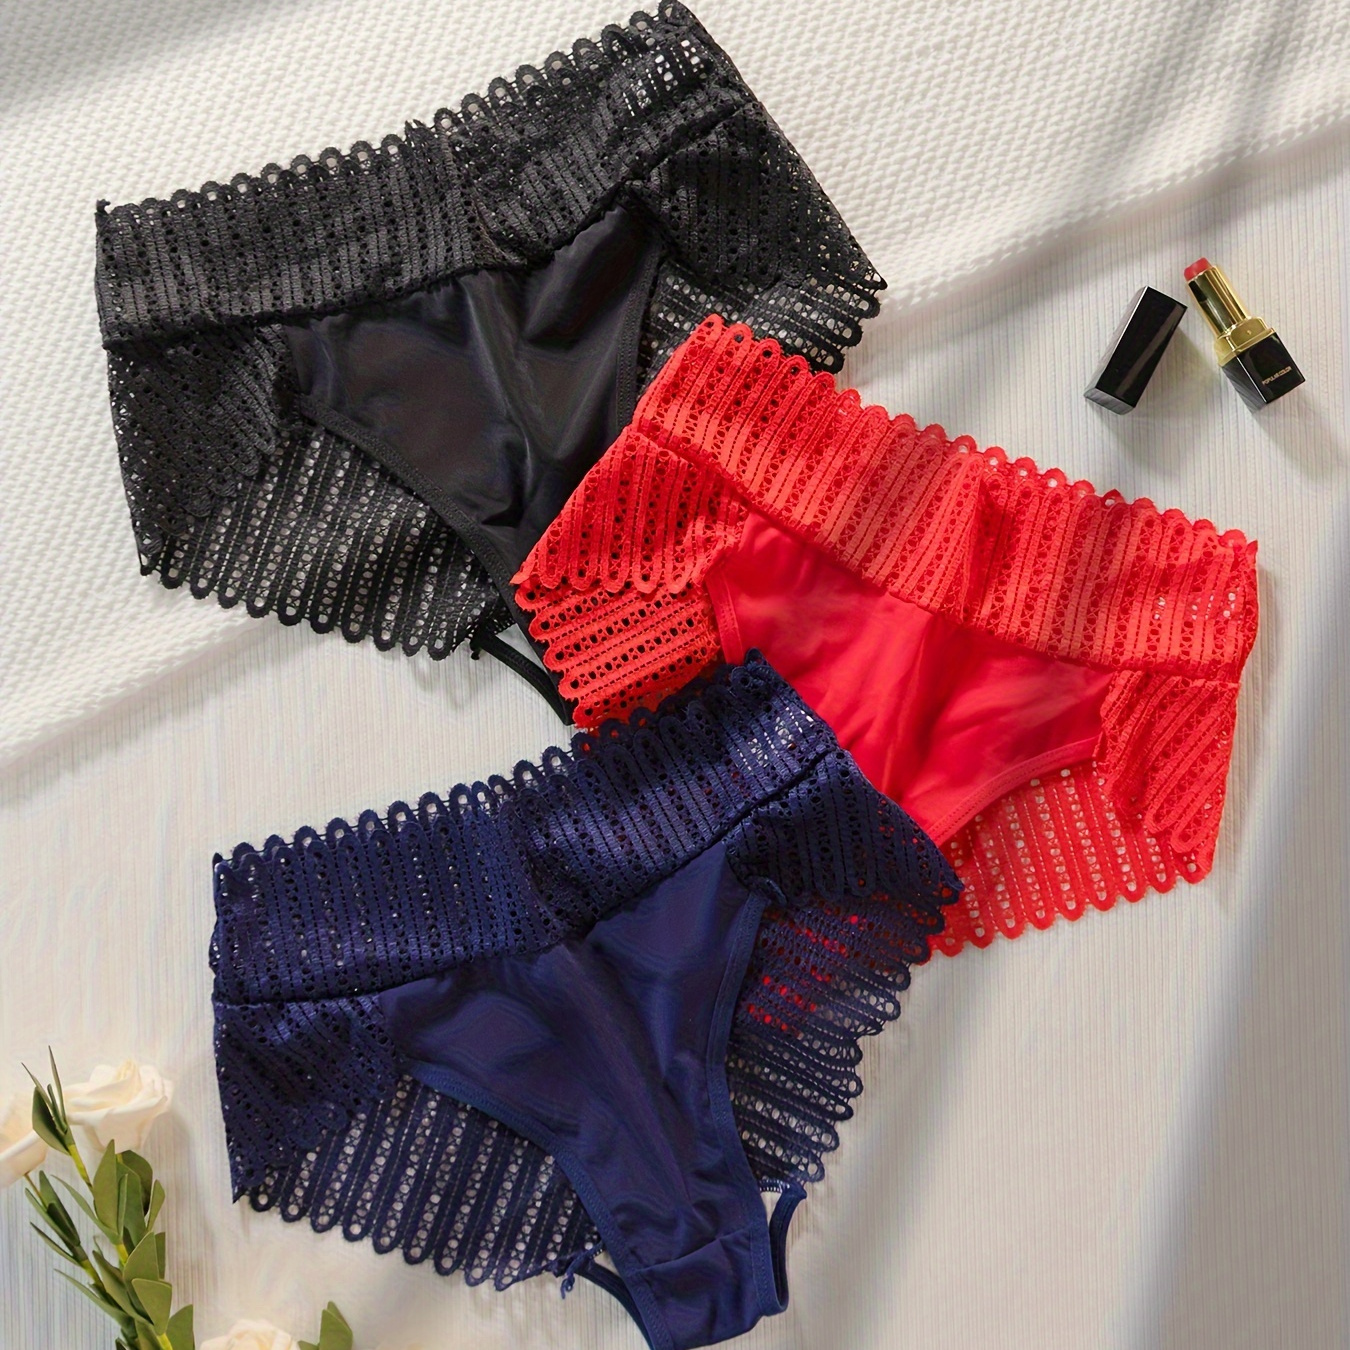 

3pcs Hot Lace Briefs, Comfy & Breathable Scallop Trim Panties, Women's Lingerie & Underwear